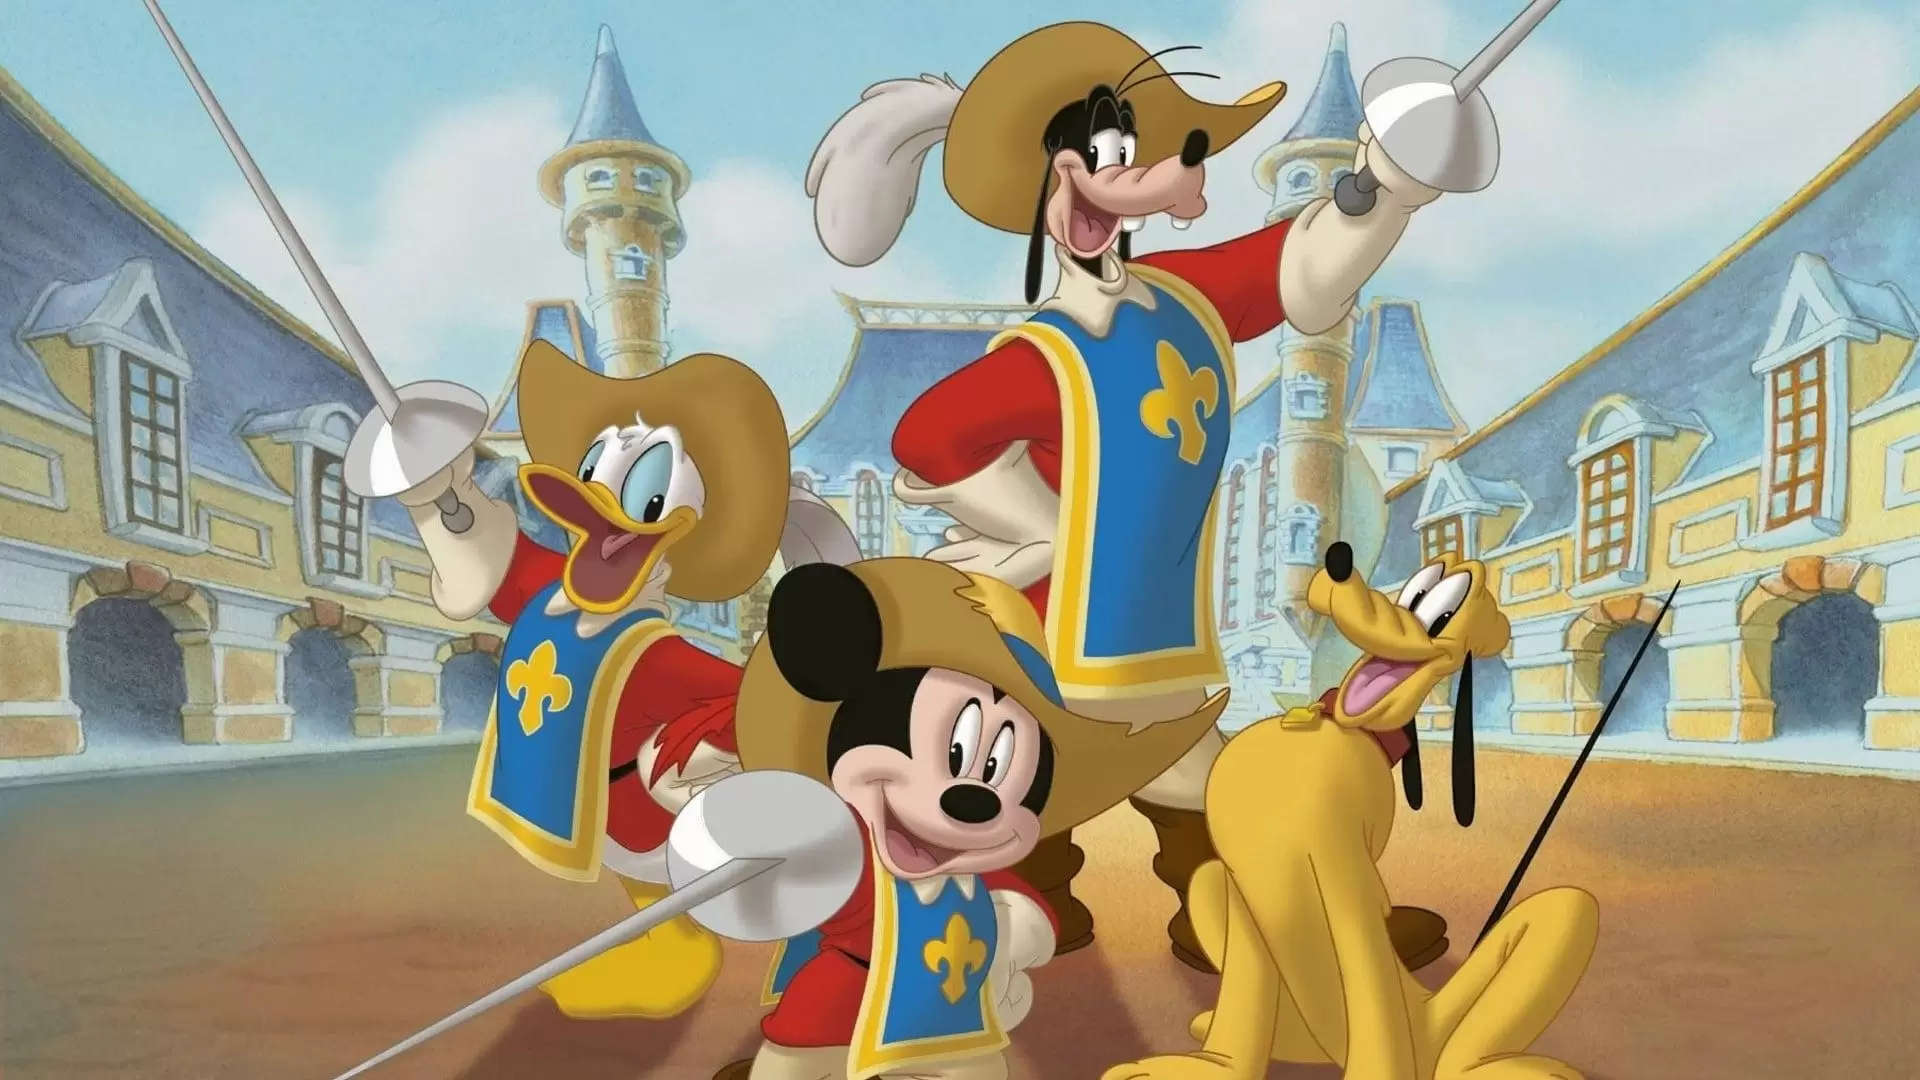 دانلود انیمیشن Mickey, Donald, Goofy: The Three Musketeers 2004 (میکی، دونالد، گوفی: سه تفنگدار) با زیرنویس فارسی و تماشای آنلاین